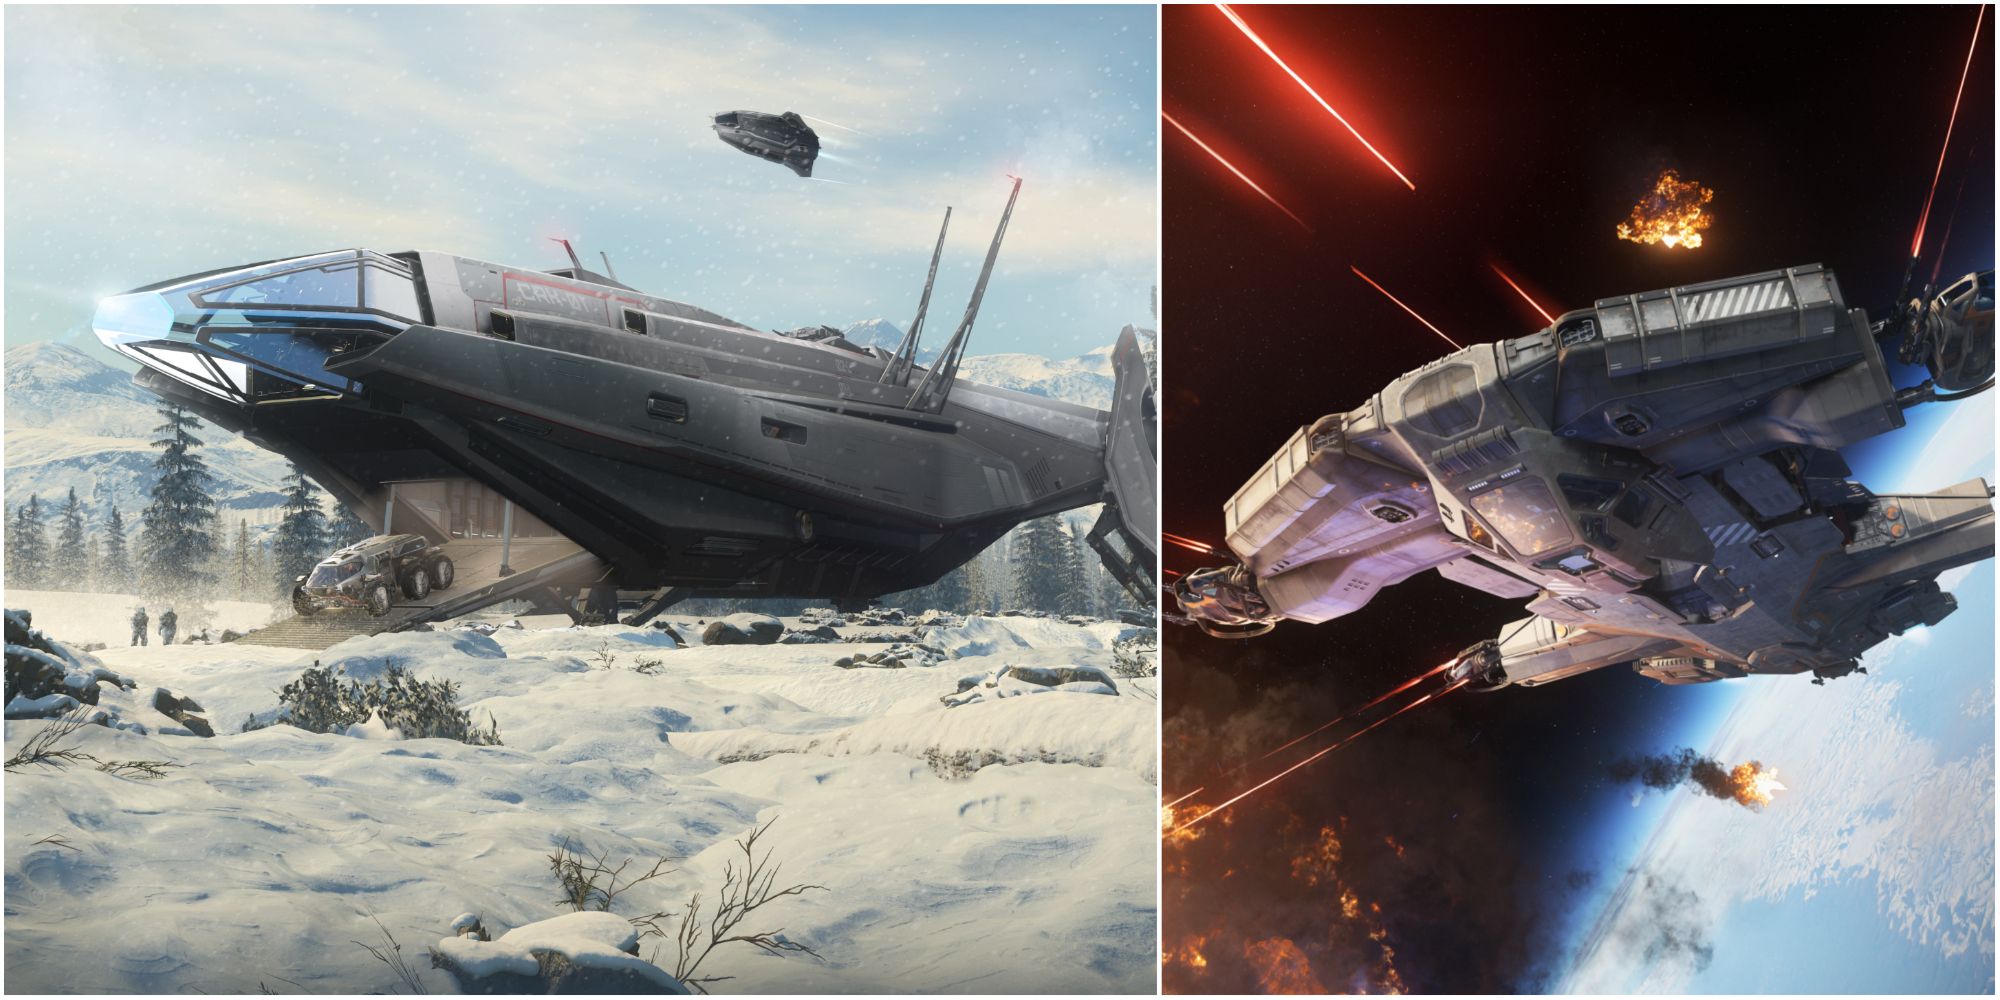 Elite: Dangerous ship size comparison (medium)  Elite dangerous ships,  Star citizen, Star wars ships